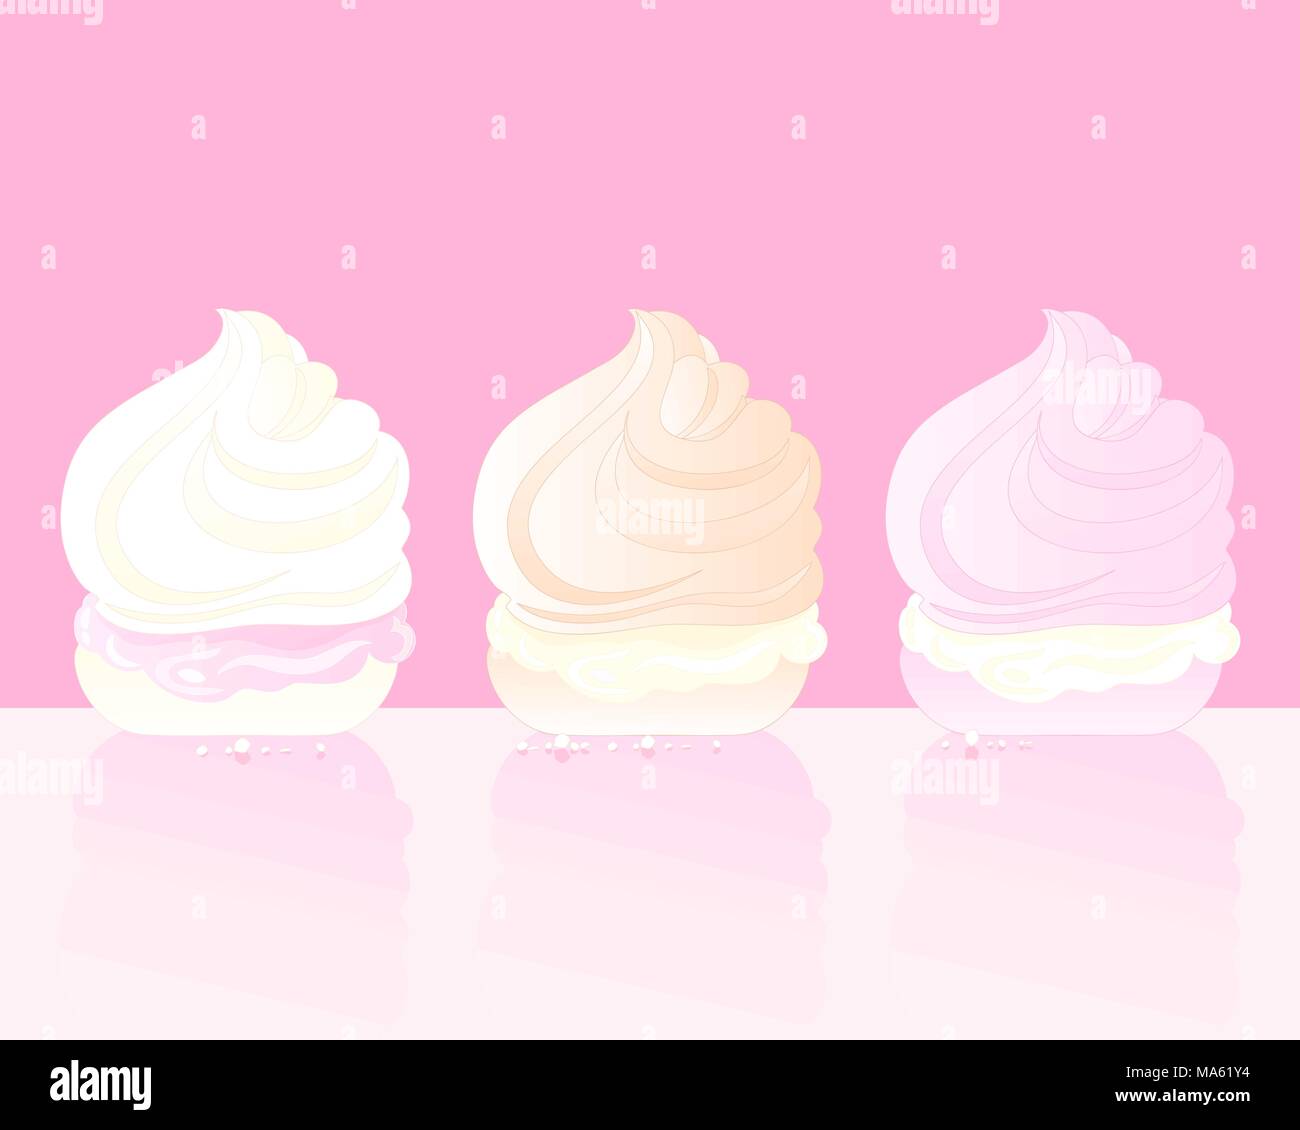 Un vecteur illustration en format eps 10 de trois délicieuses gâteries avec meringue swirly crème sur un fond rose Illustration de Vecteur